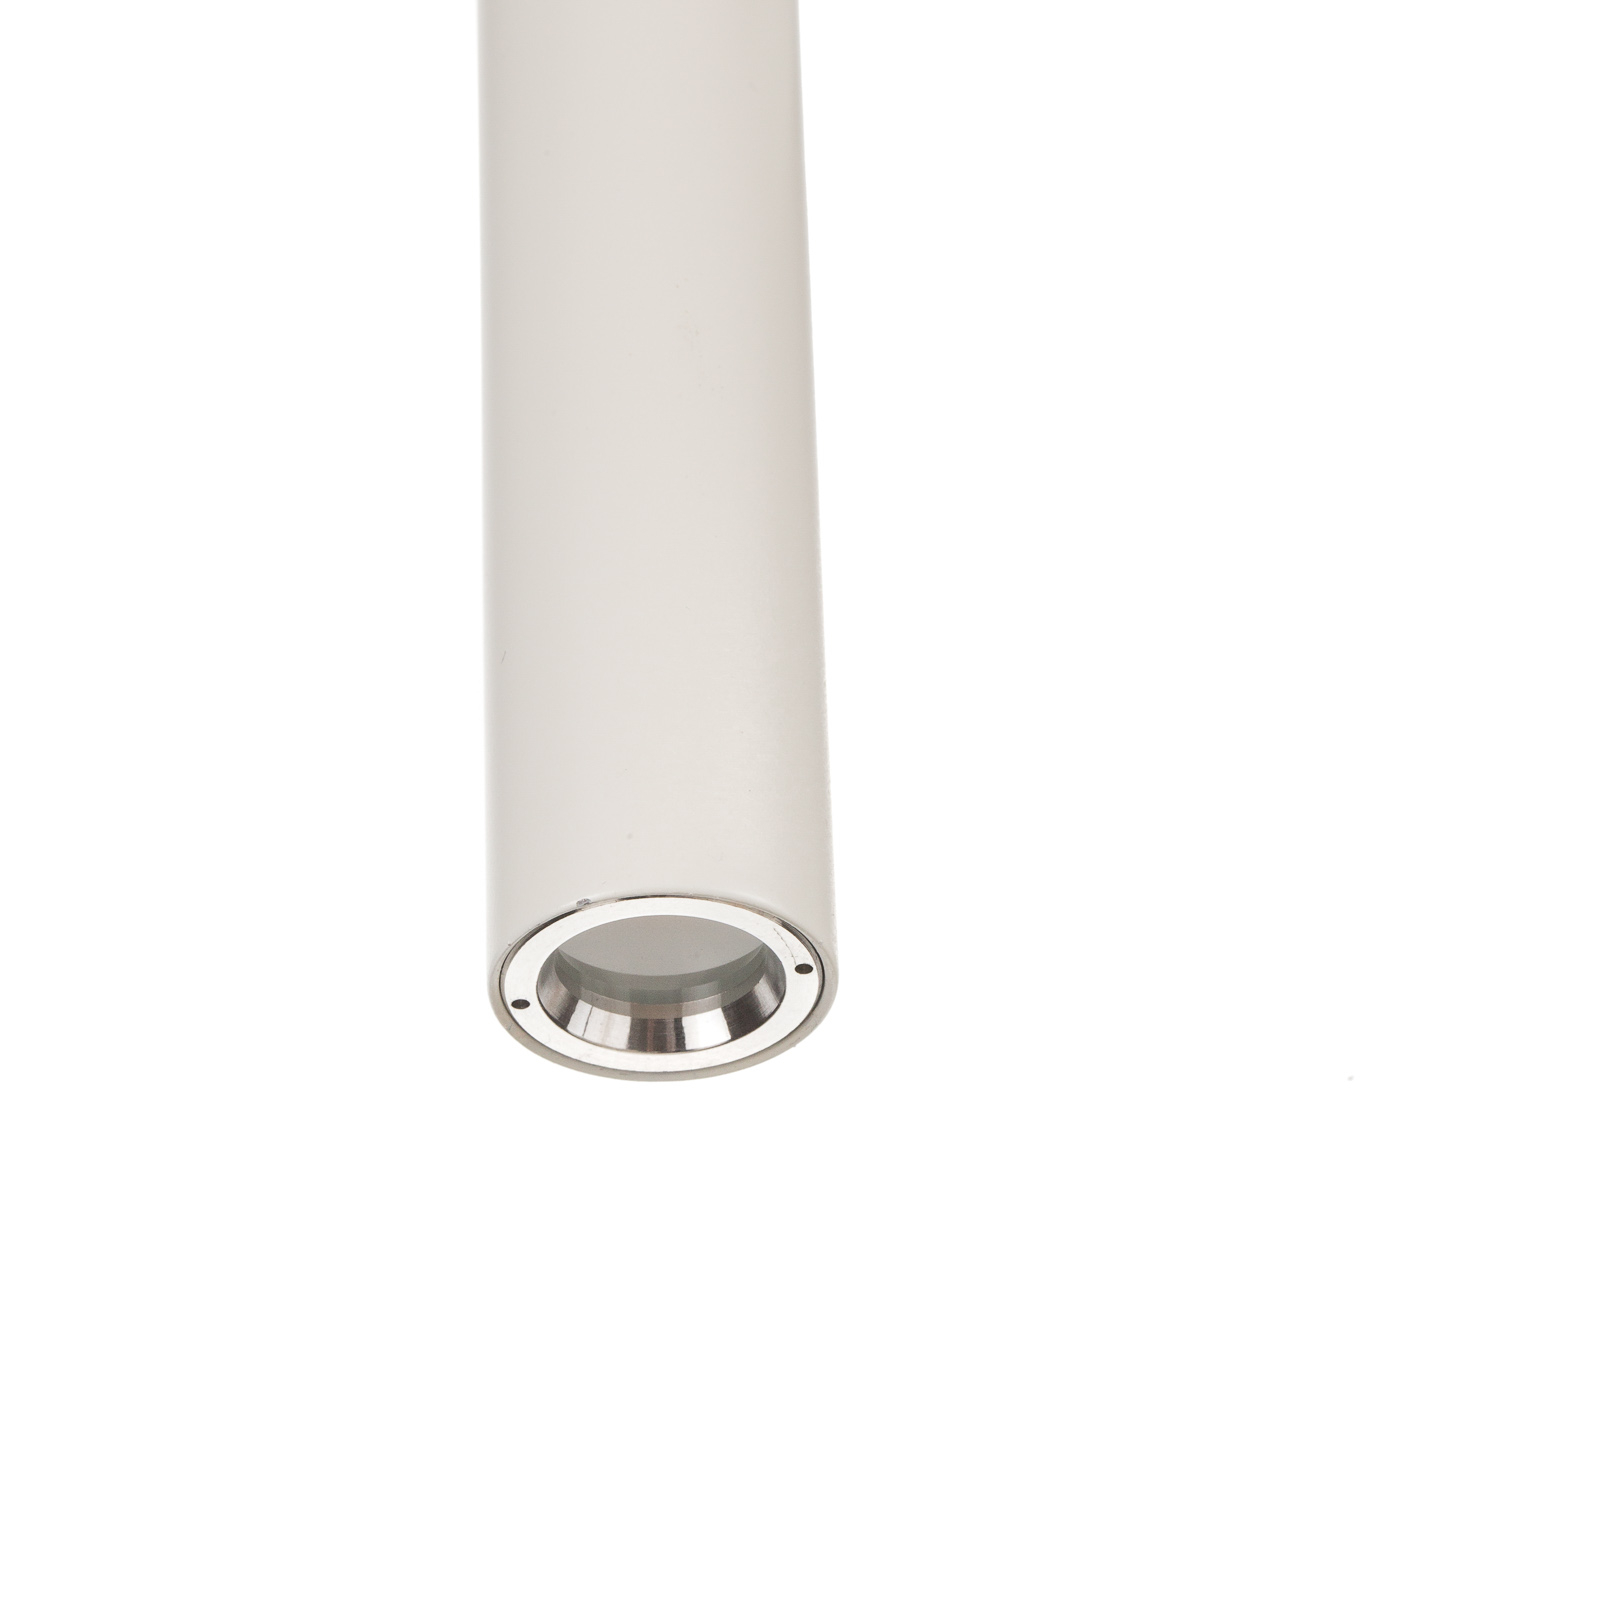 Foscarini Tobia LED wandlamp met kabel wit